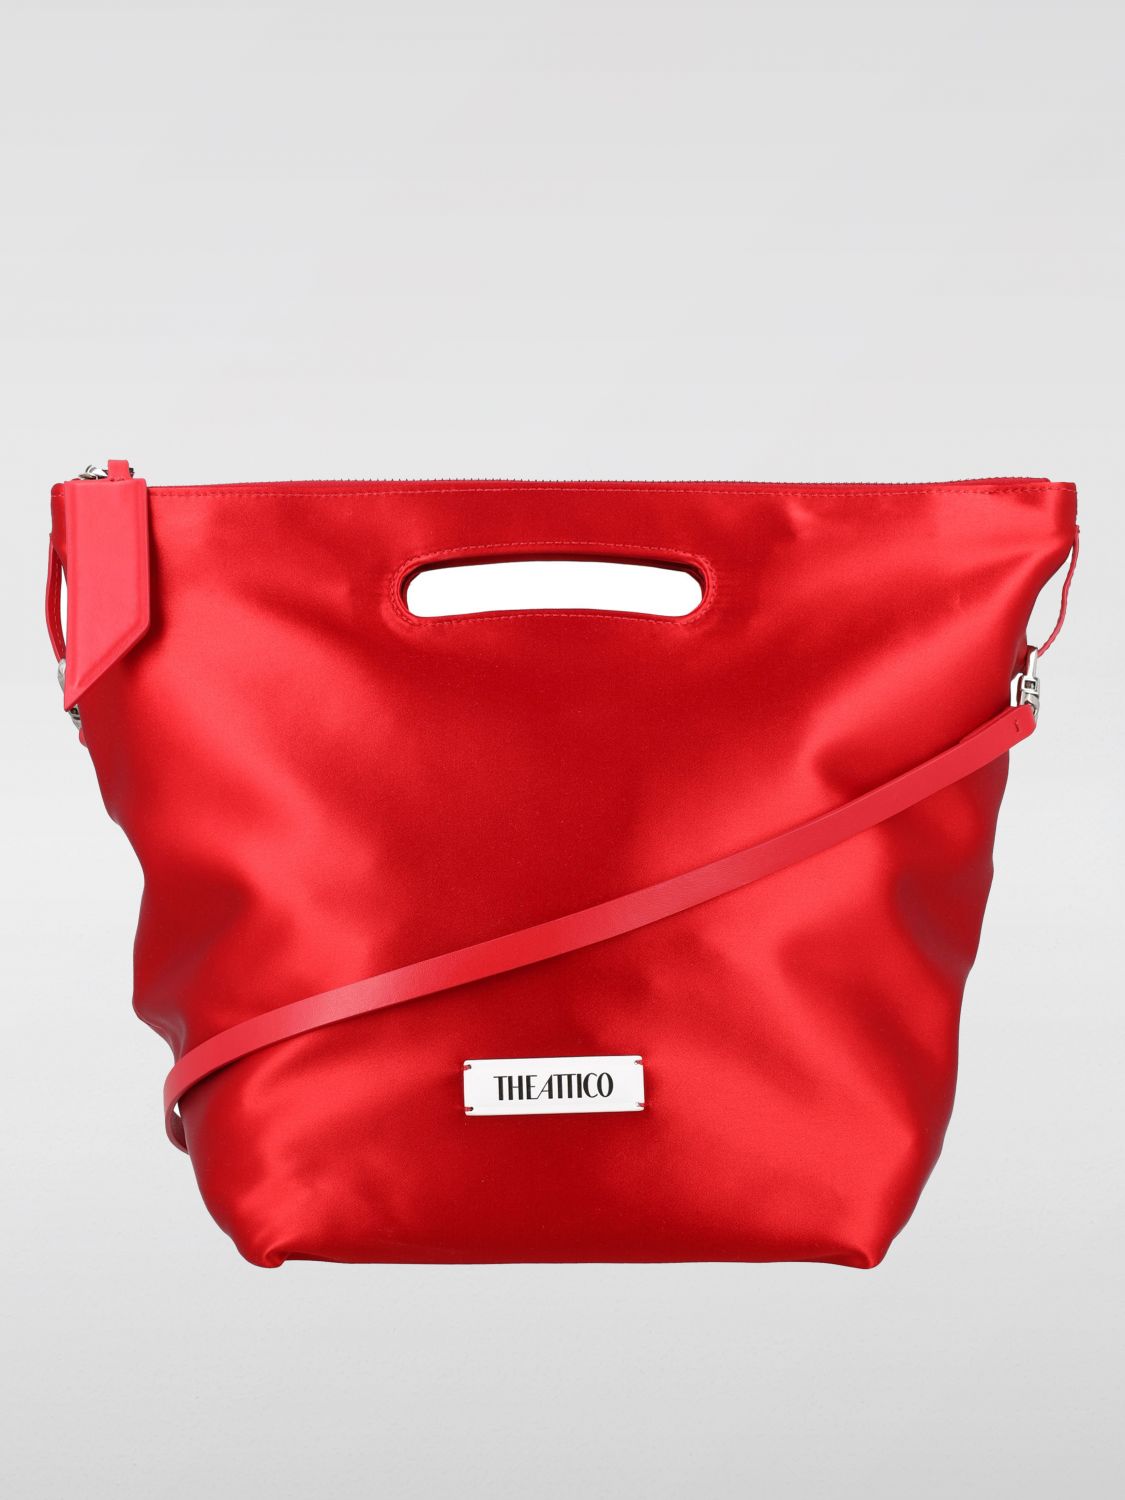 Attico Handbag The  Woman Color Red